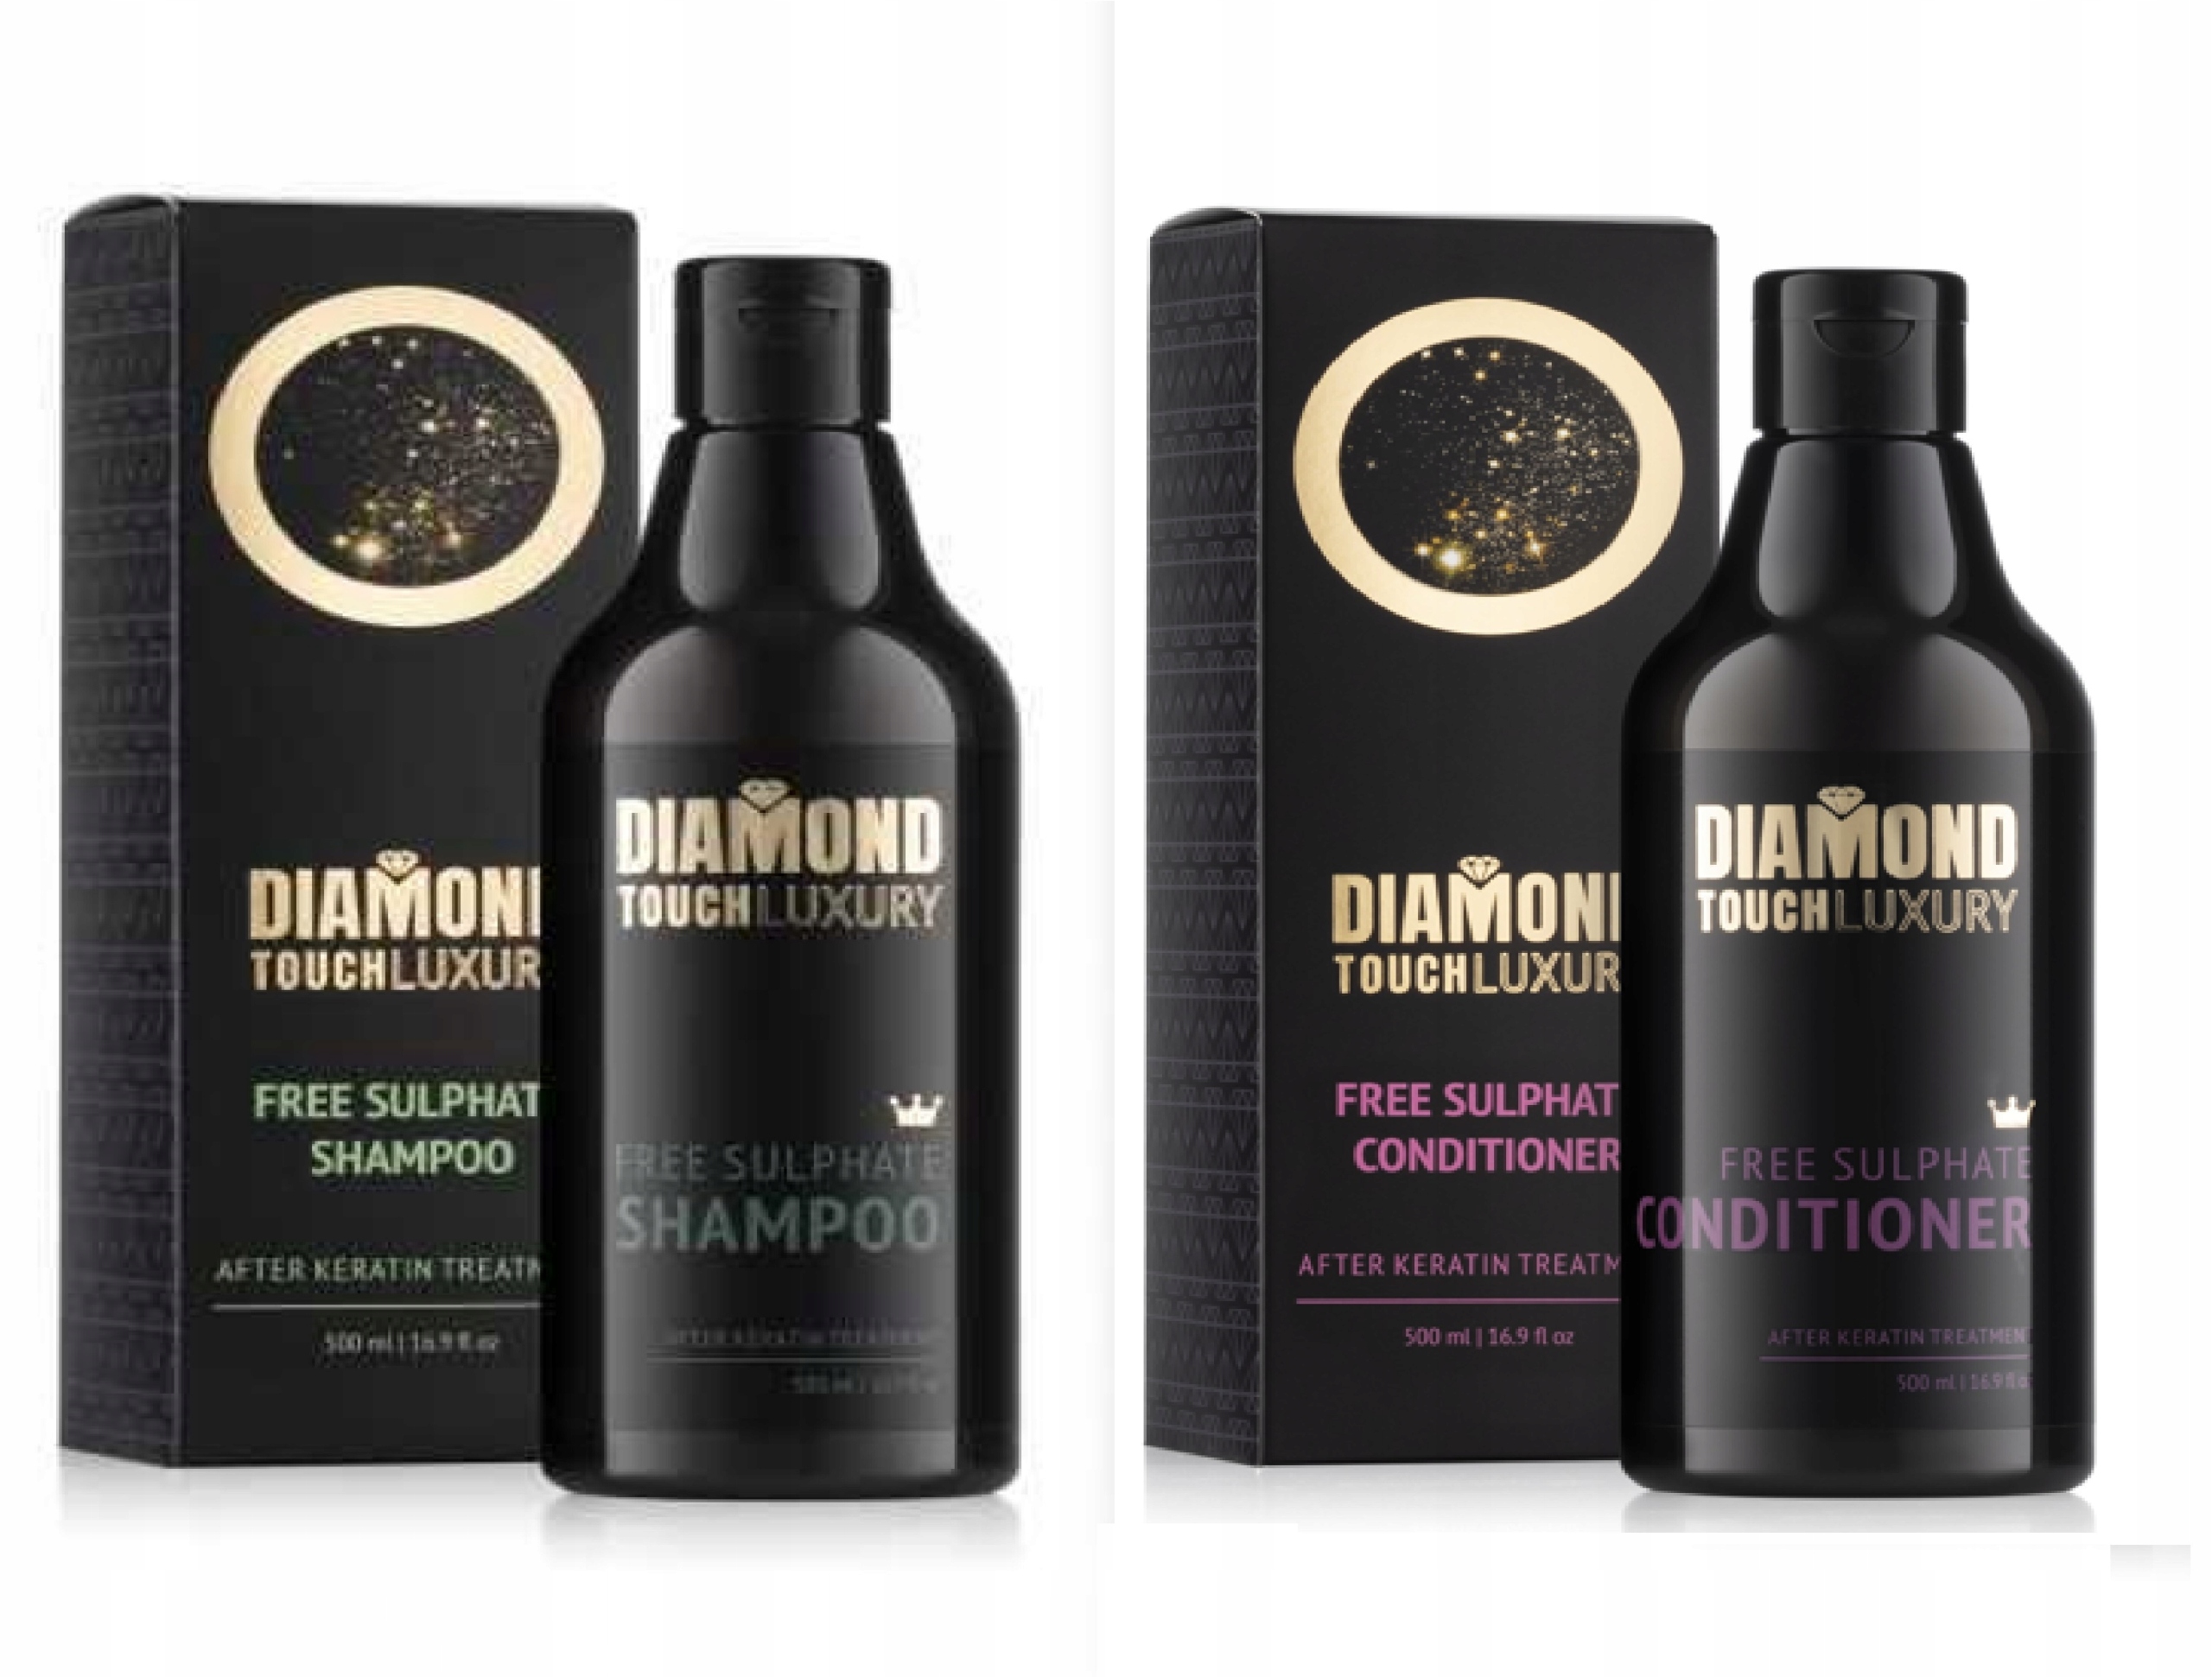 diamond szampon po keratynowym prostowaniu